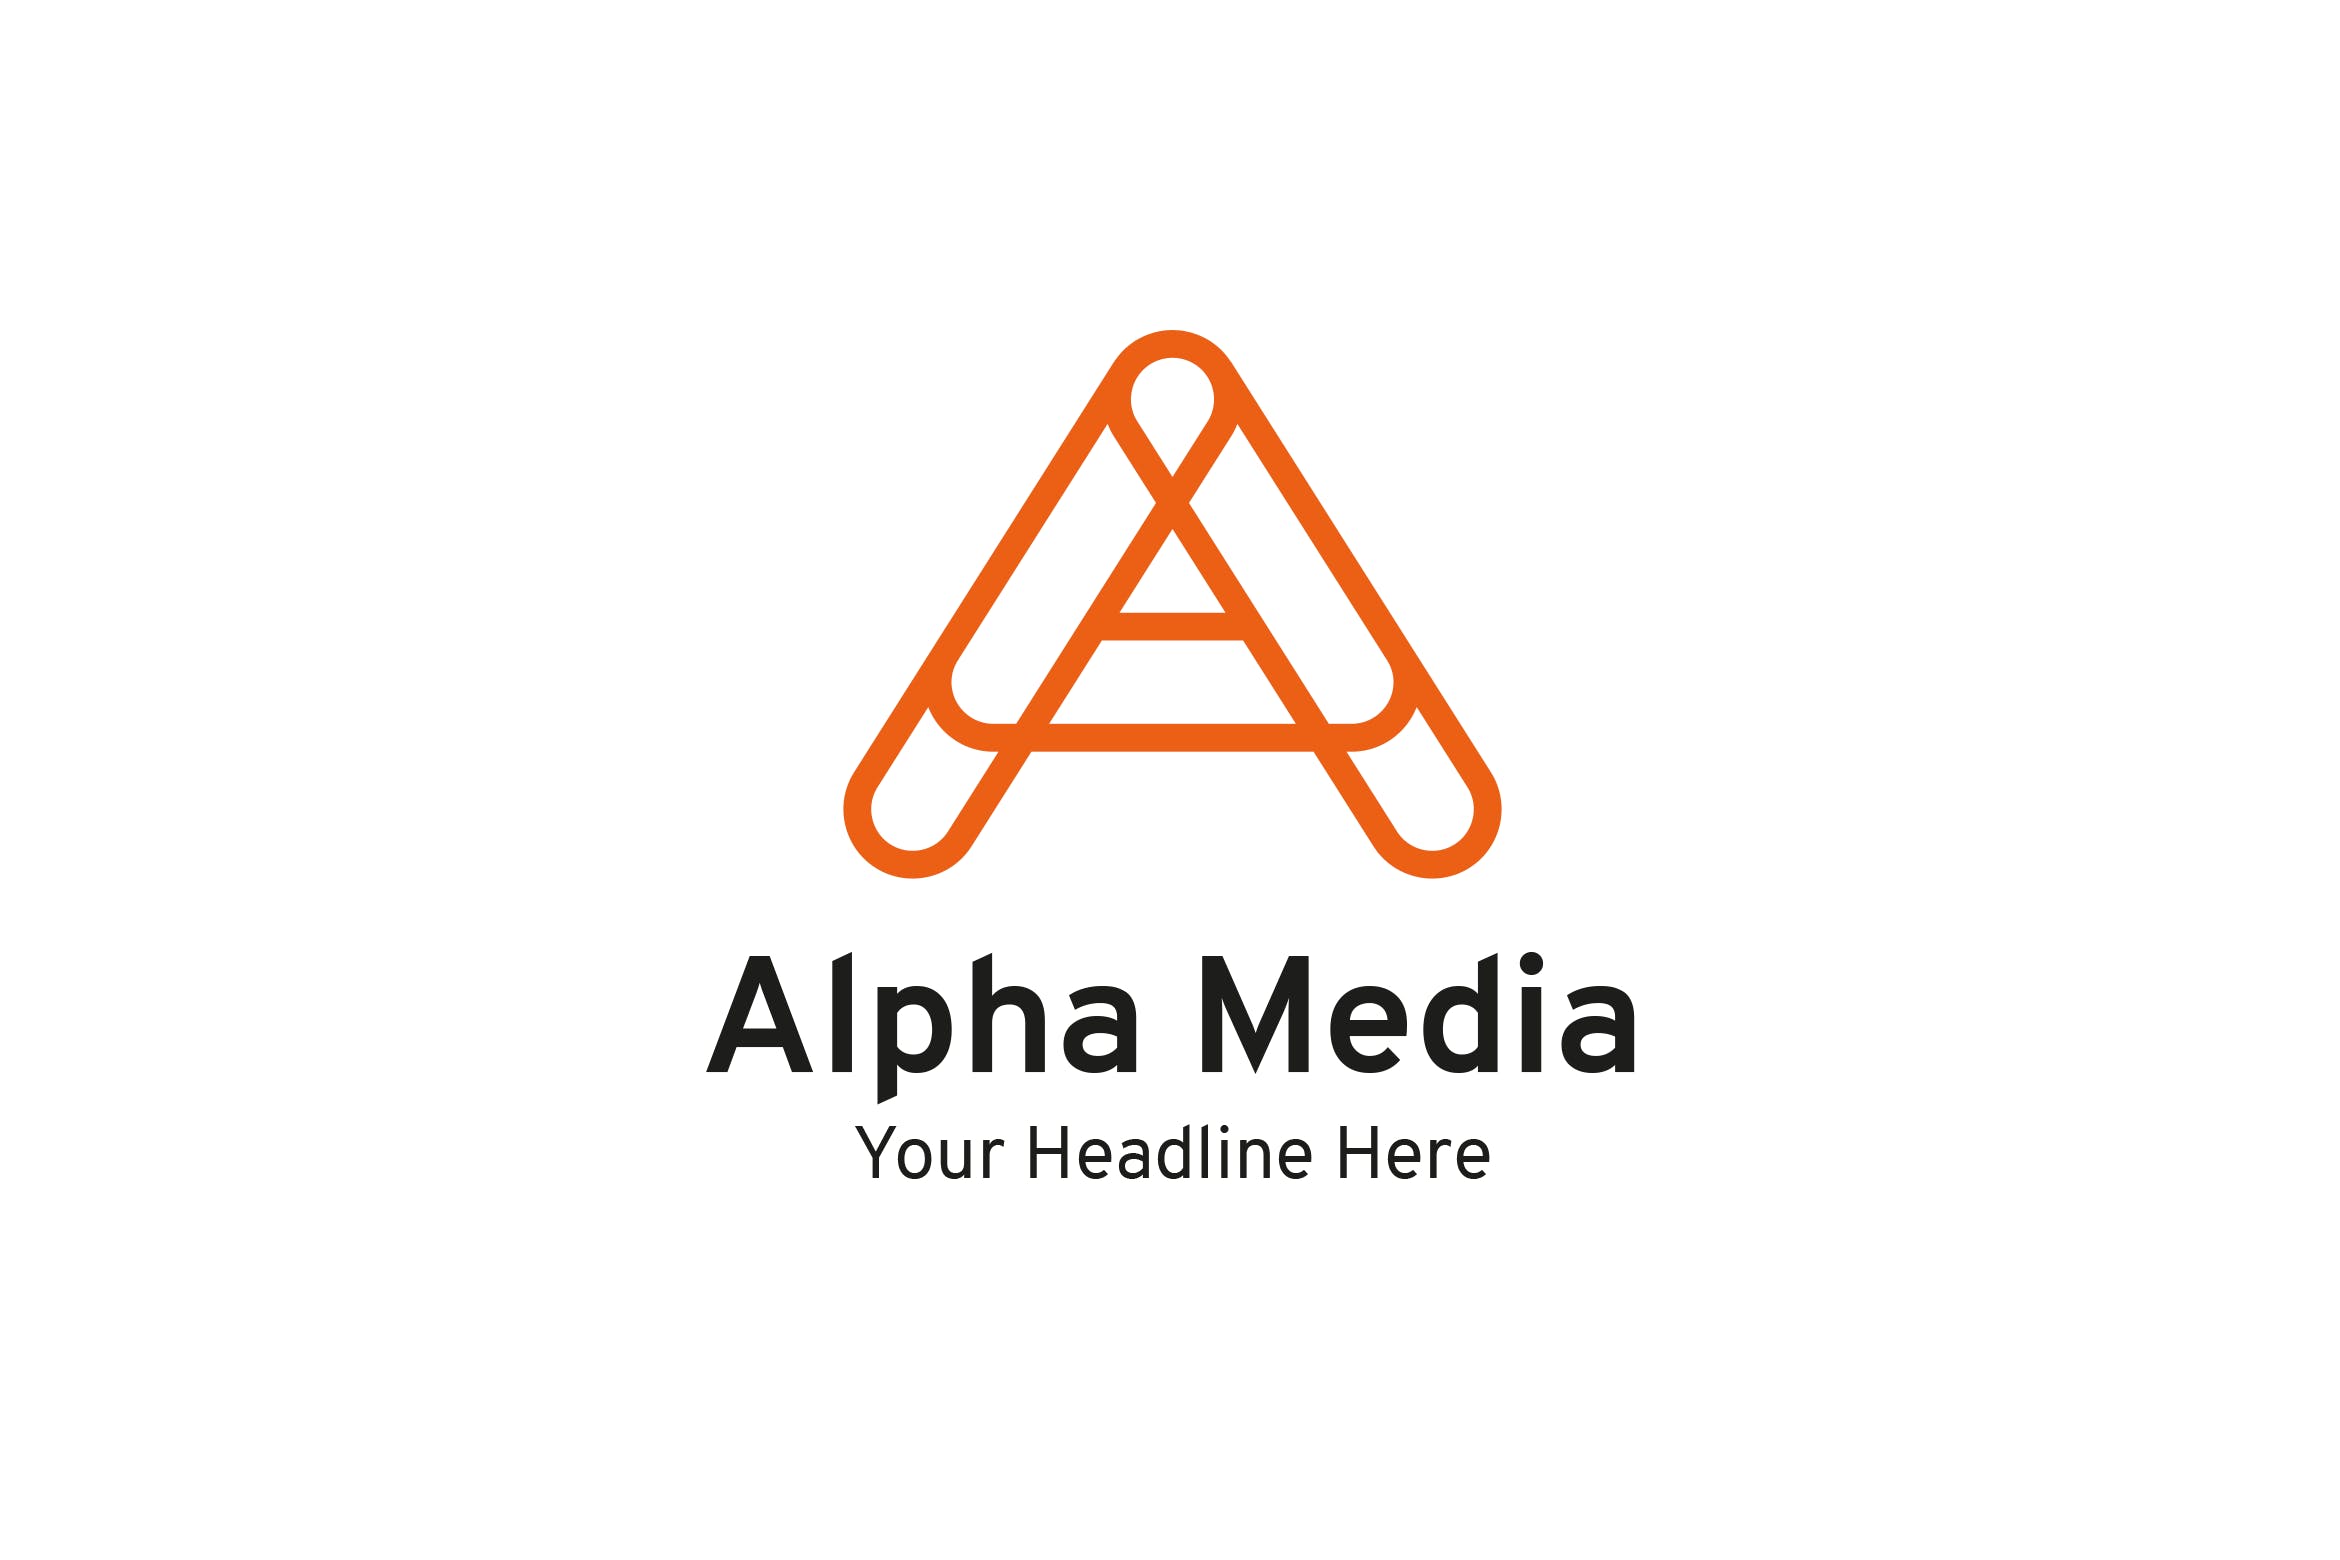 字母A创意Logo设计素材中国精选模板 Alpha Media – A letter logo插图